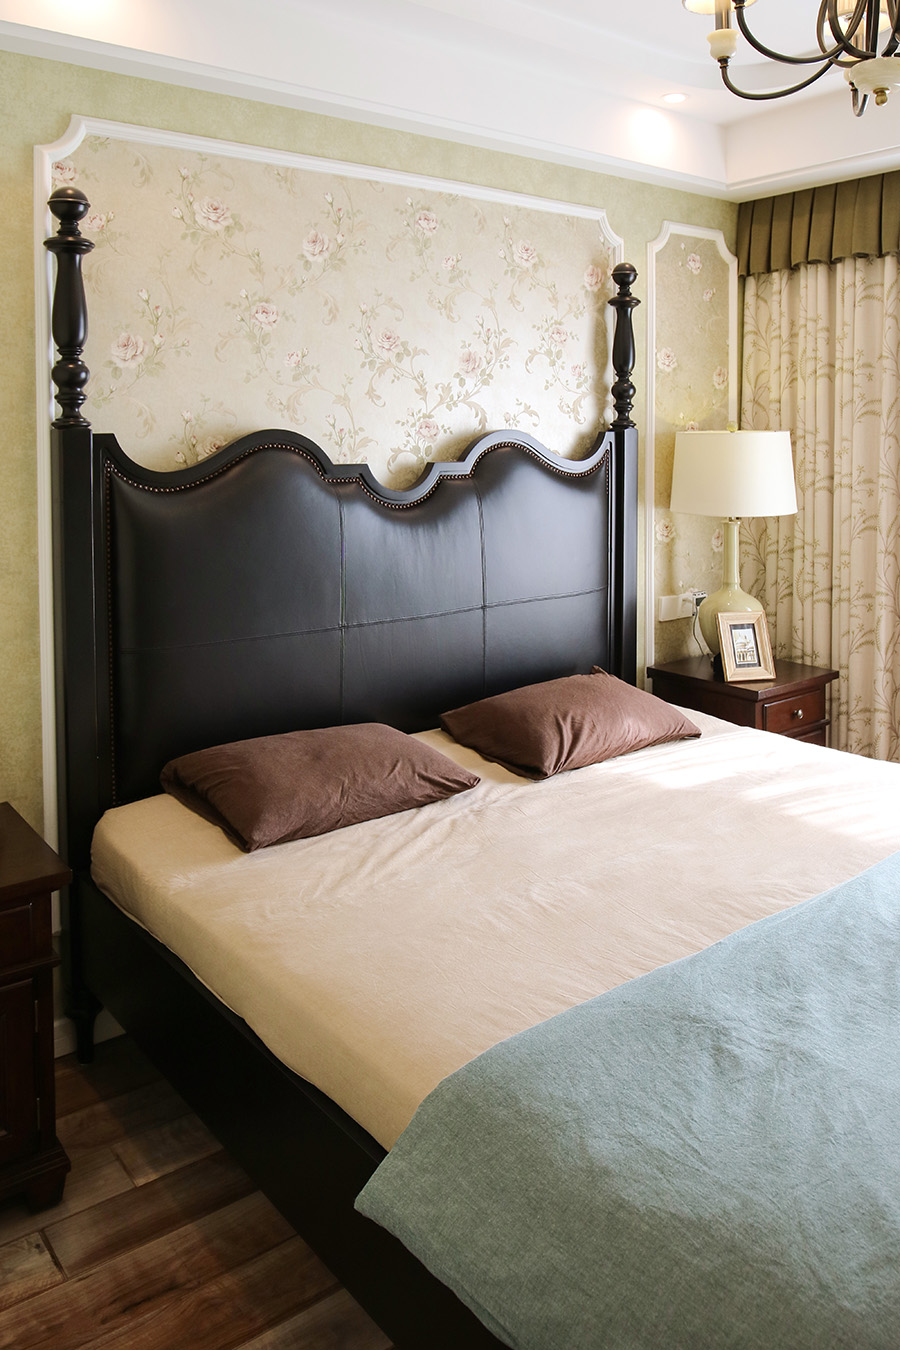 苏格兰高地·皇后柱式床-传统古董黑